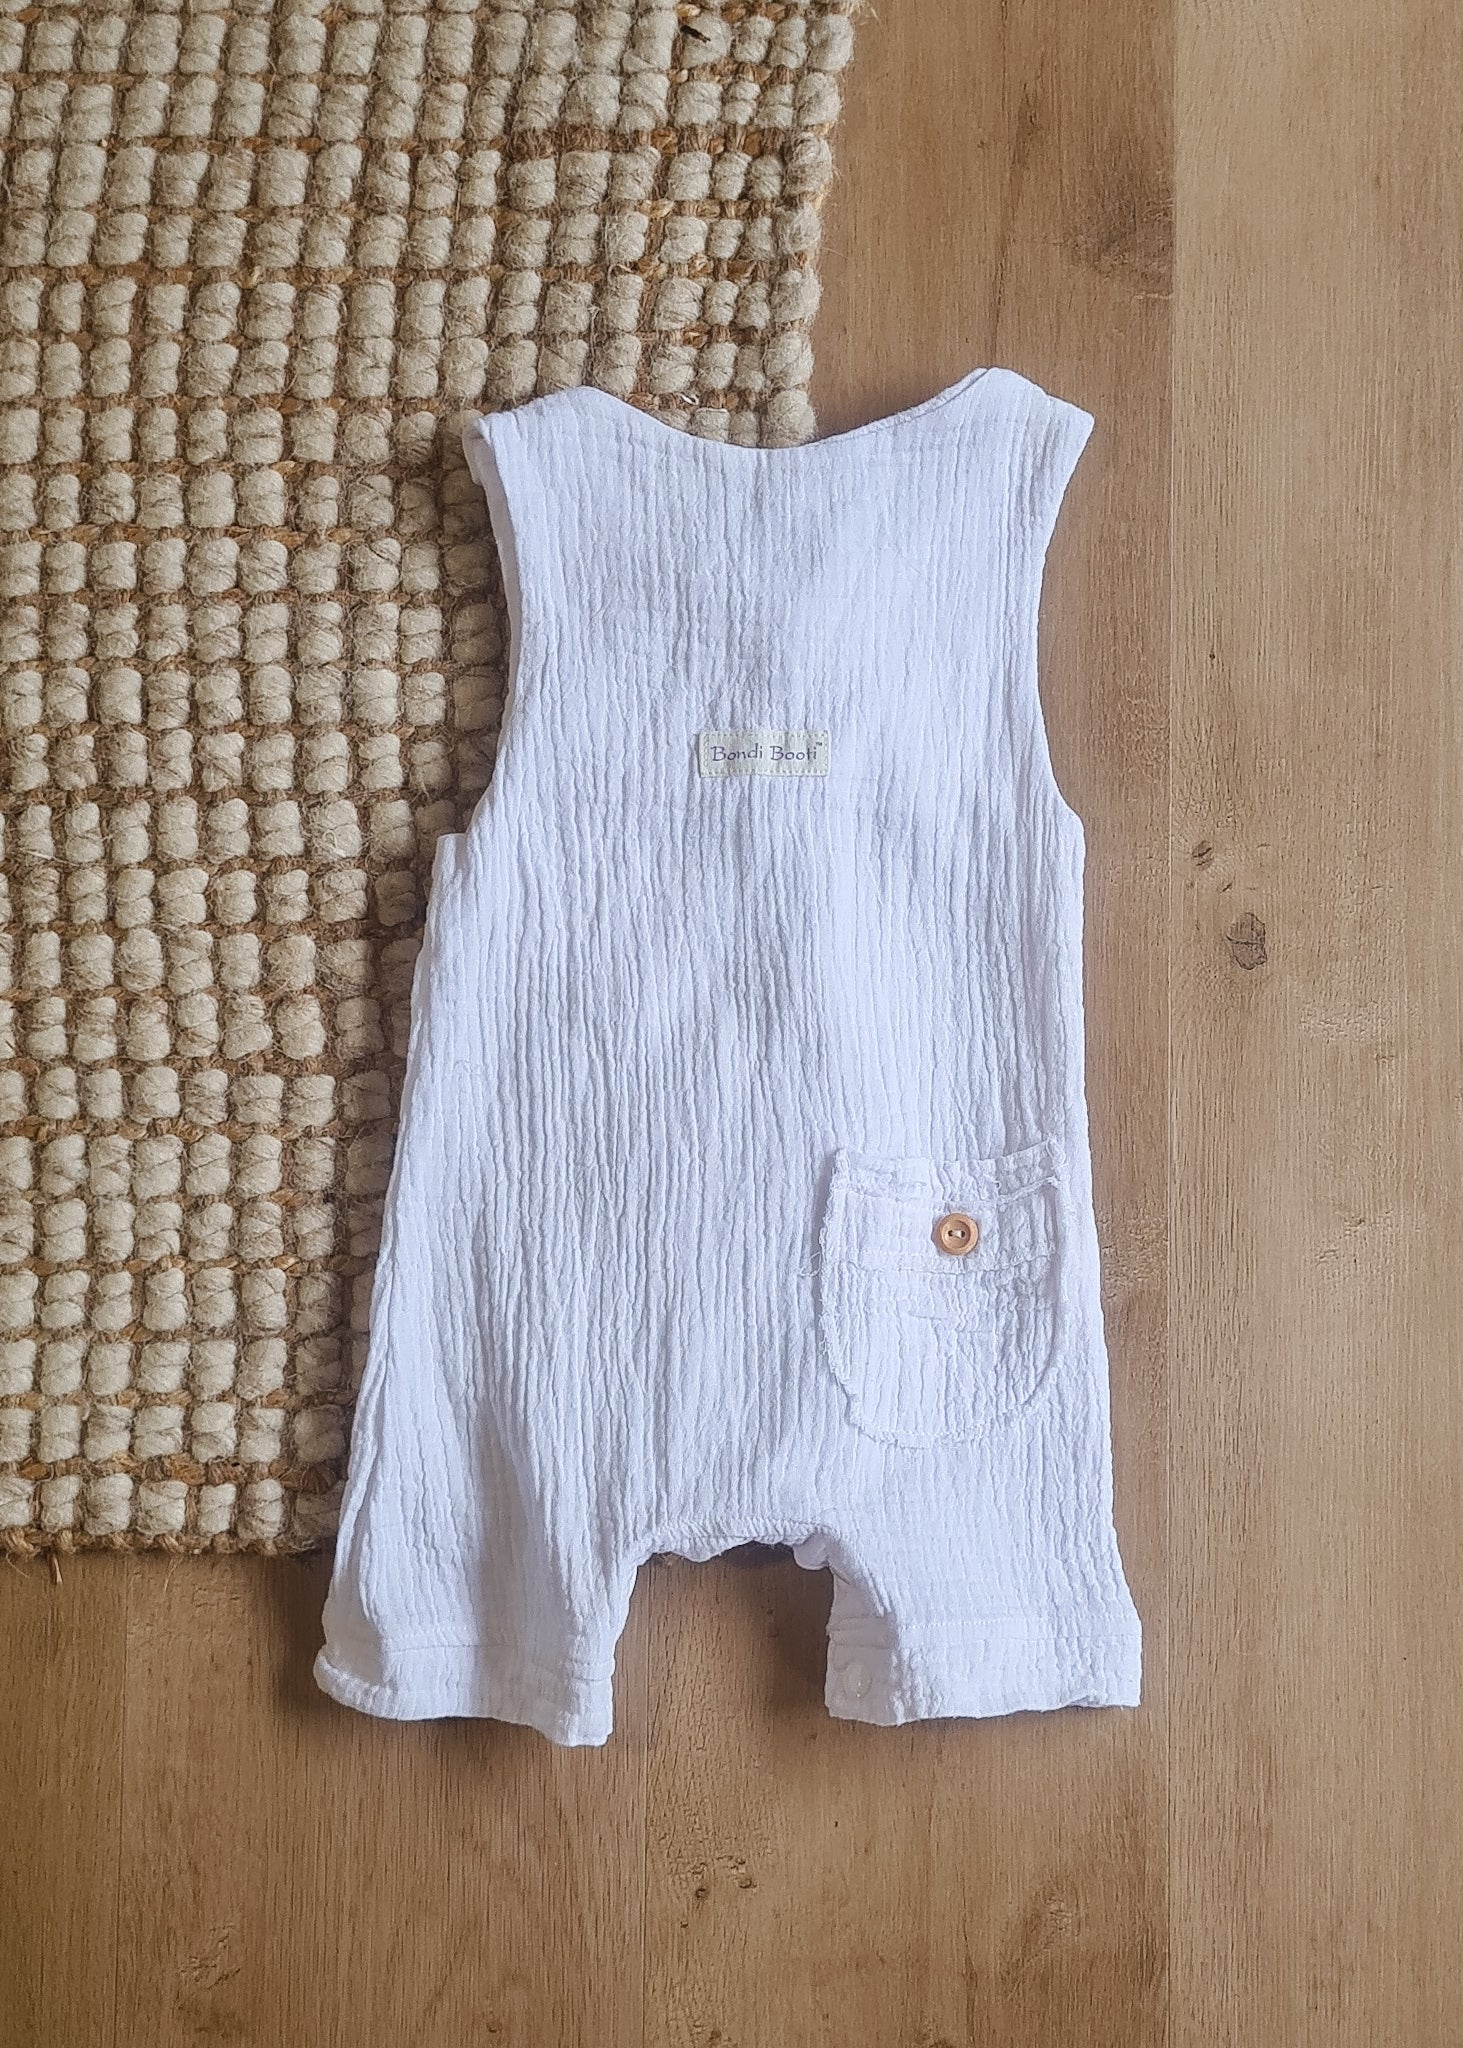 Organic cotton baby romper white overalls